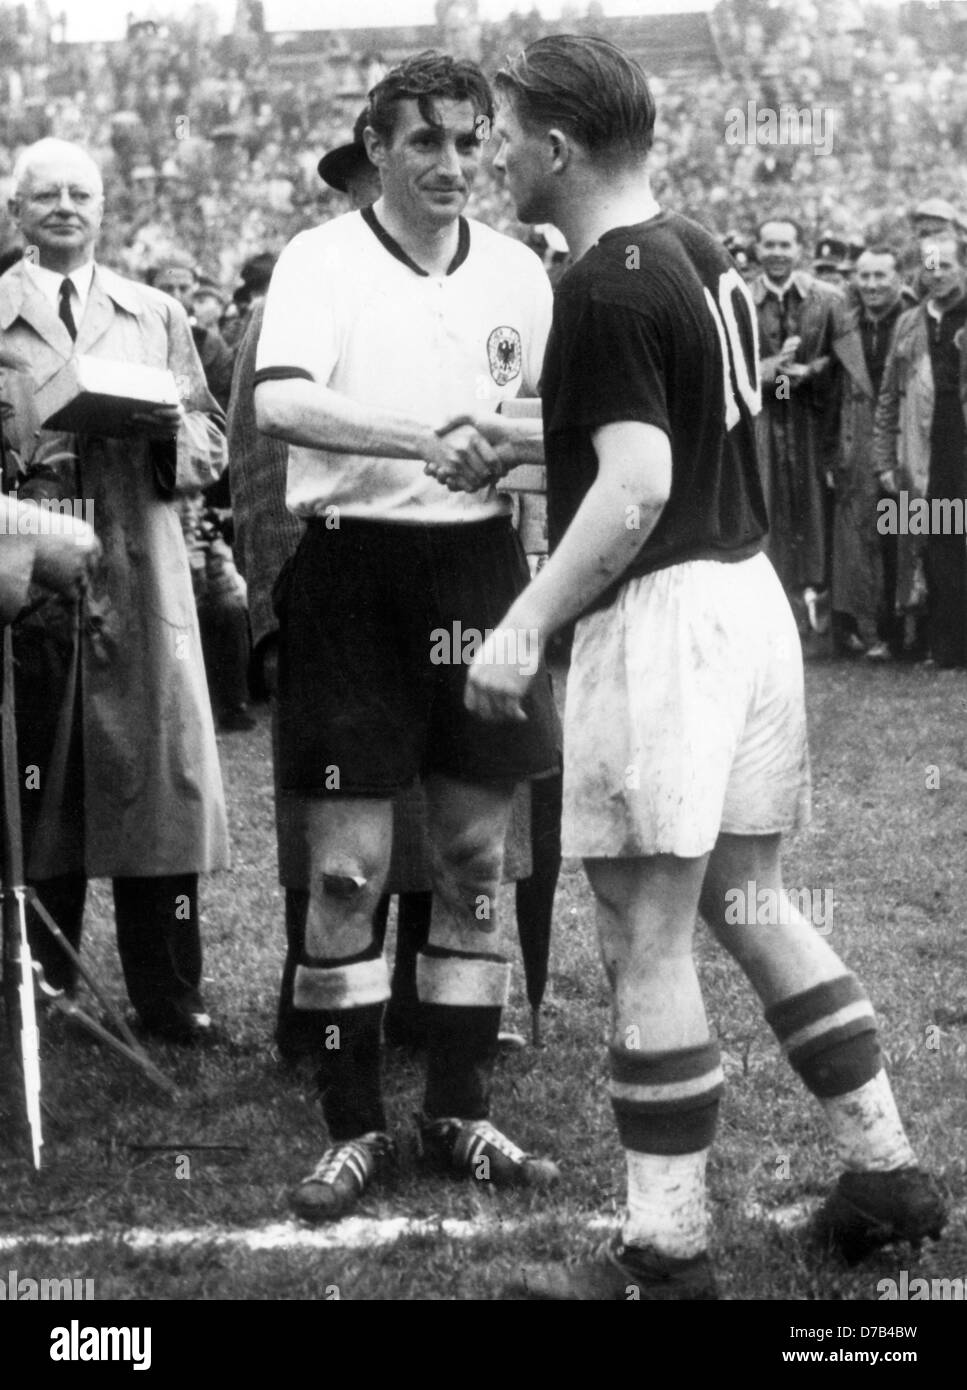 Le capitaine de l'équipe hongroise Ferenc Puskas (r) félicite le capitaine allemand Fritz Walter (l) sur la victoire allemande du championnat du monde le 4 juillet en 1954. L'Allemagne avait gagné contre la Hongrie avec 3:2. Dans l'arrière-plan à gauche le secrétaire général de la FIFA, Kurt Gassmann. Banque D'Images